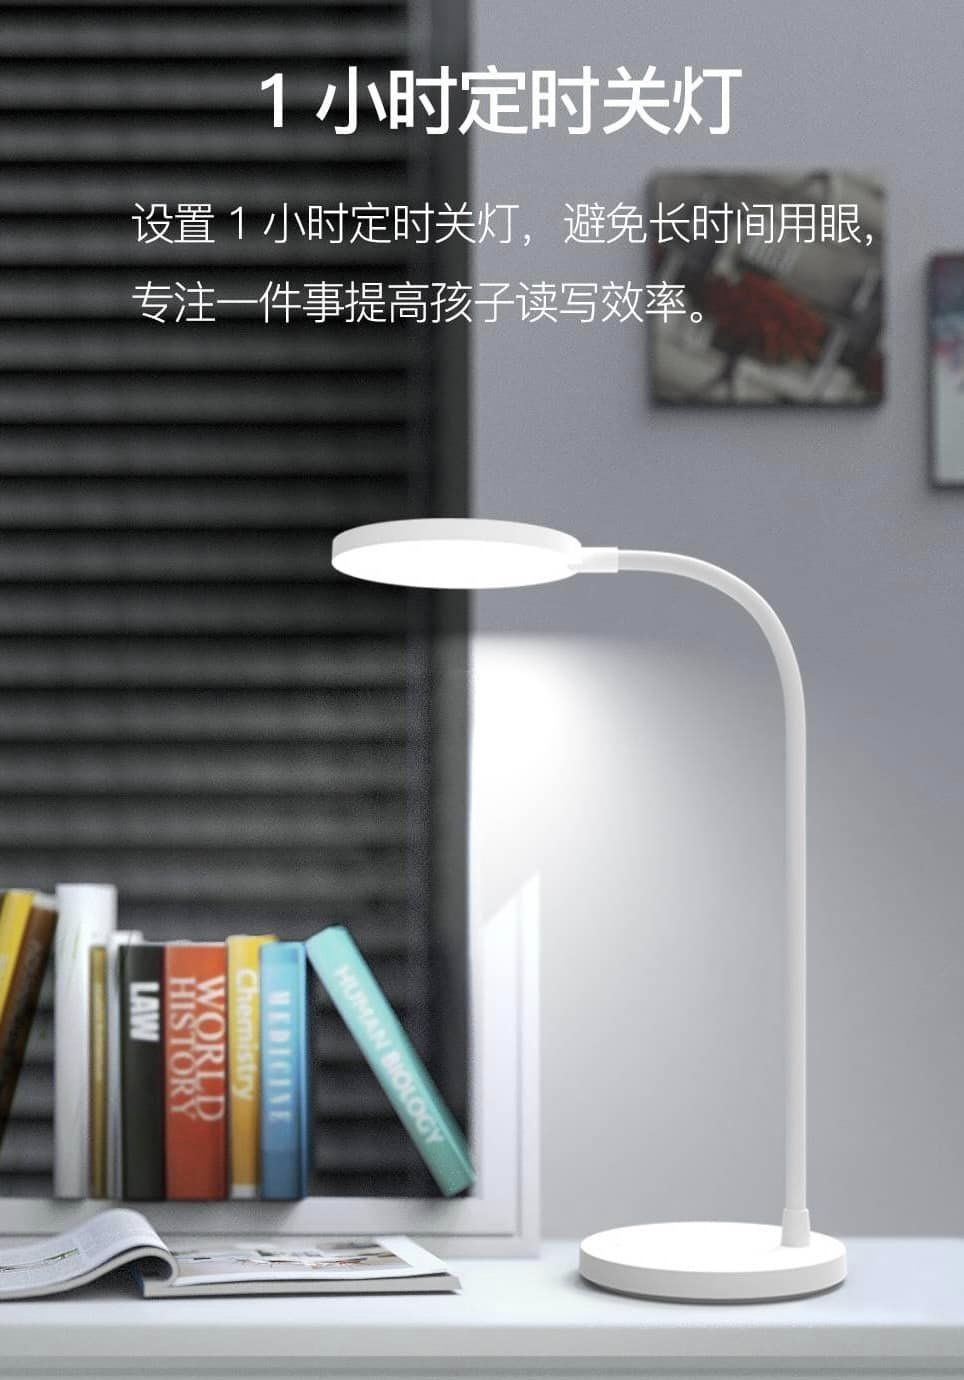 Eye-protected LED desk lamp